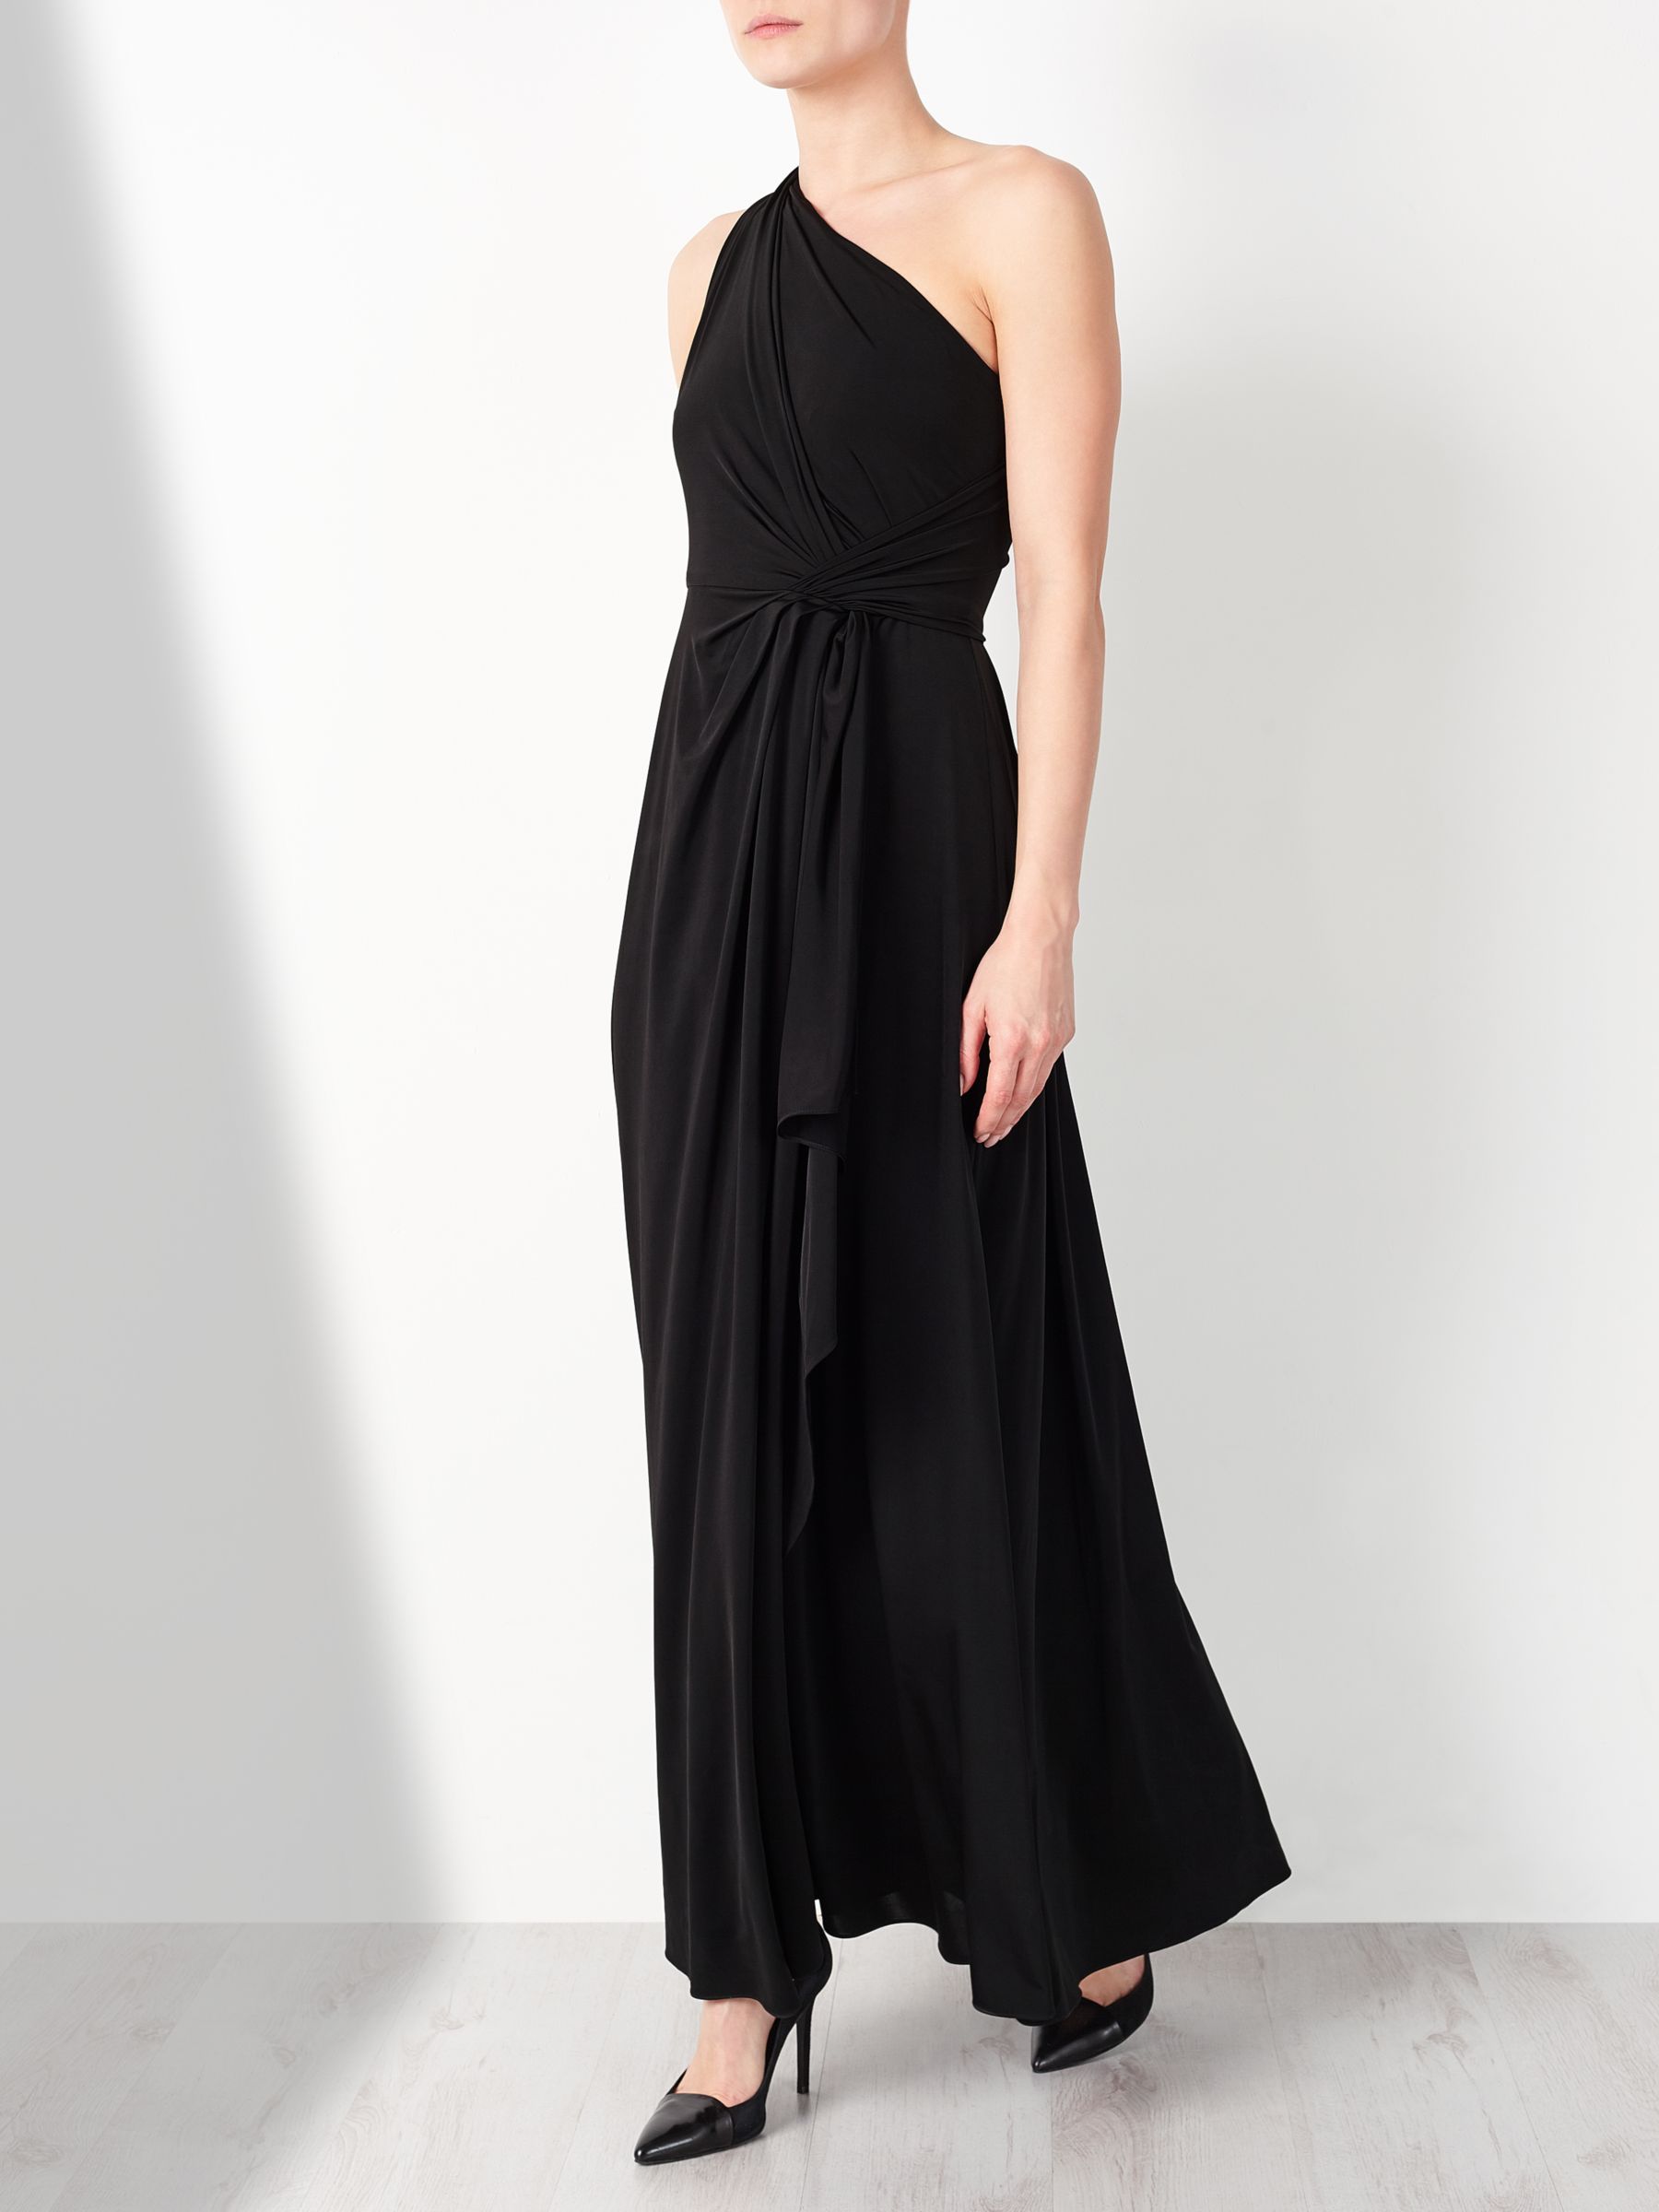 John Lewis & Partners One Shoulder Dress, Black, 10